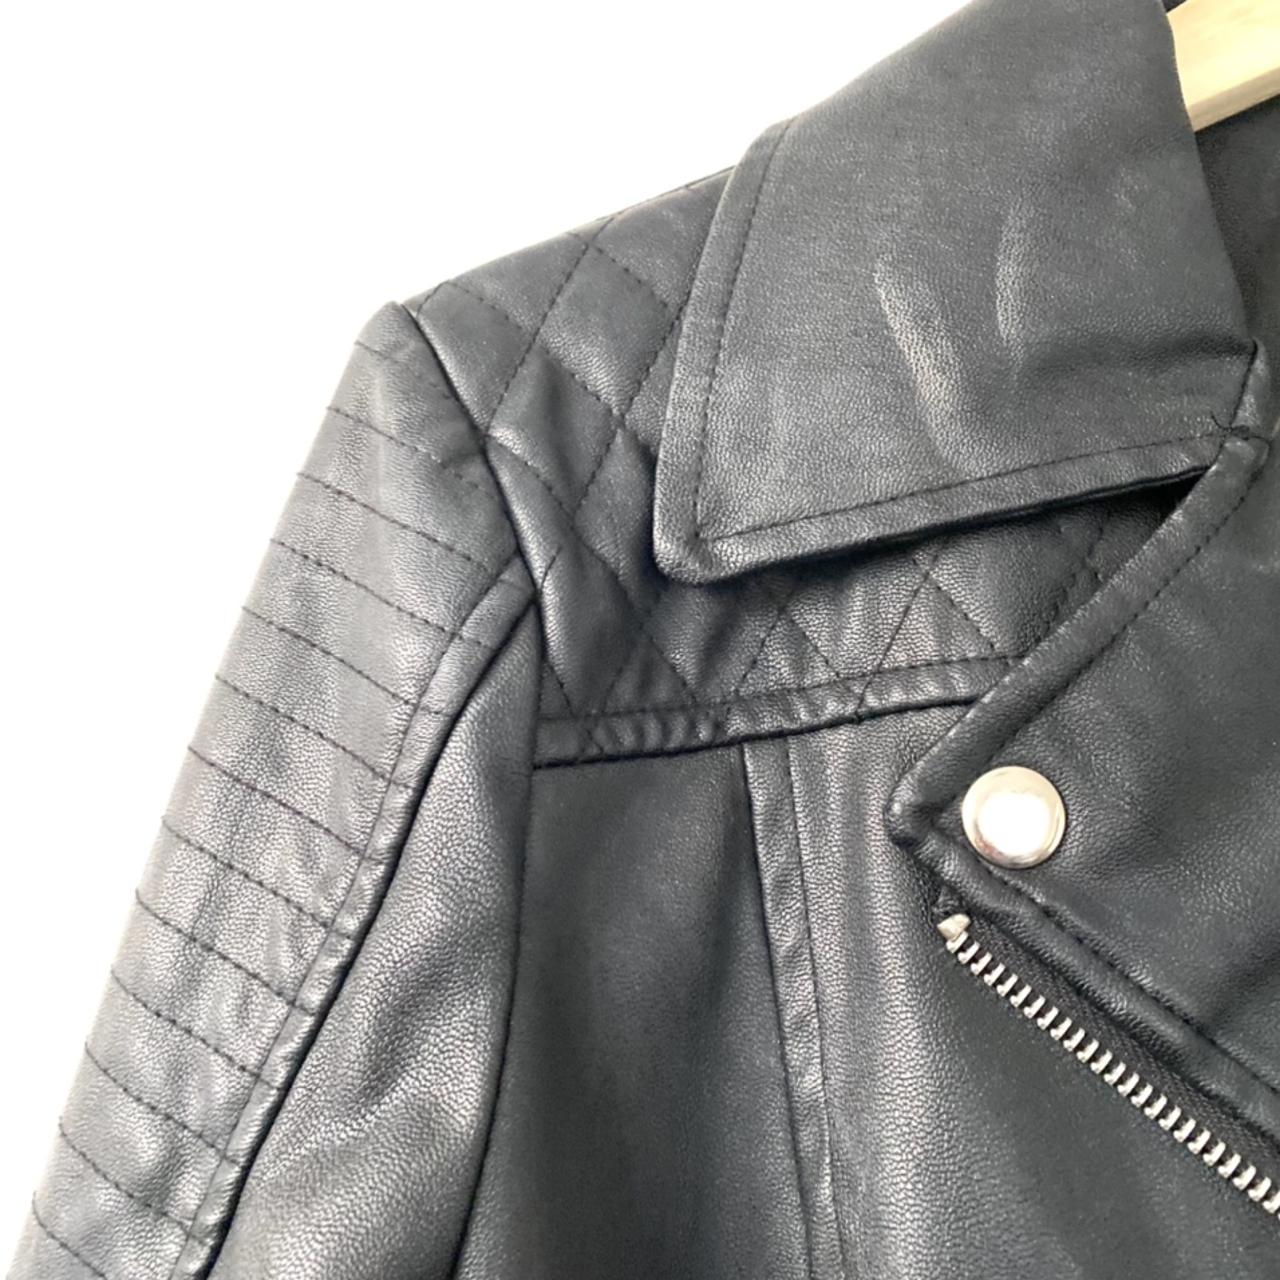 black leather jacket size: M fit: 6-12 depending... - Depop